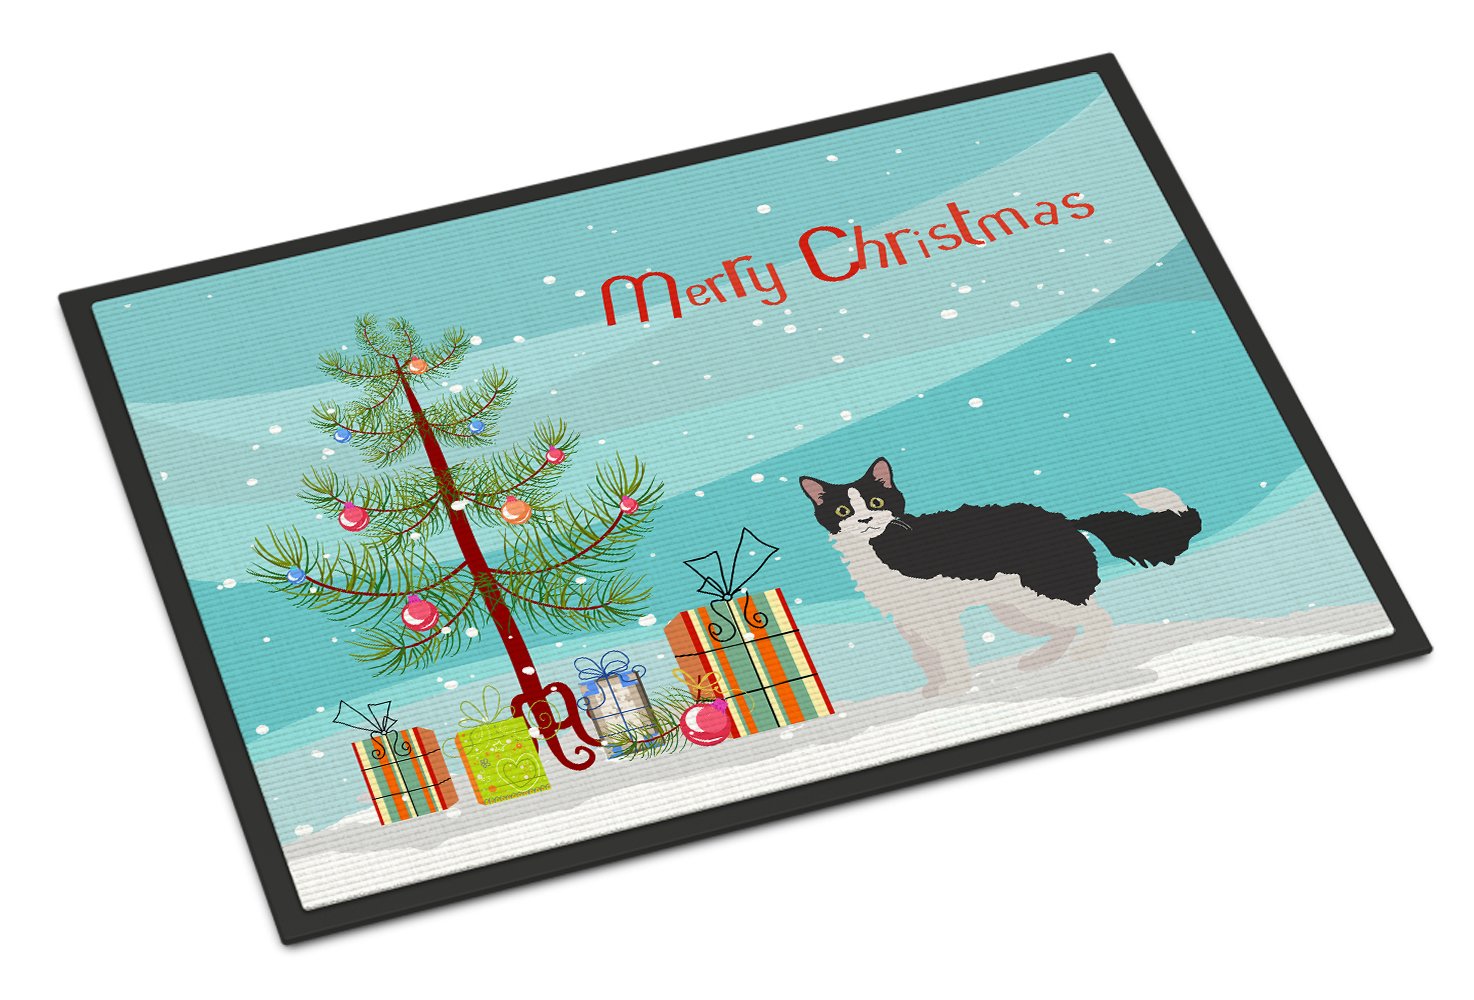 La Perm #1 Cat Merry Christmas Indoor or Outdoor Mat 24x36 CK4642JMAT by Caroline's Treasures